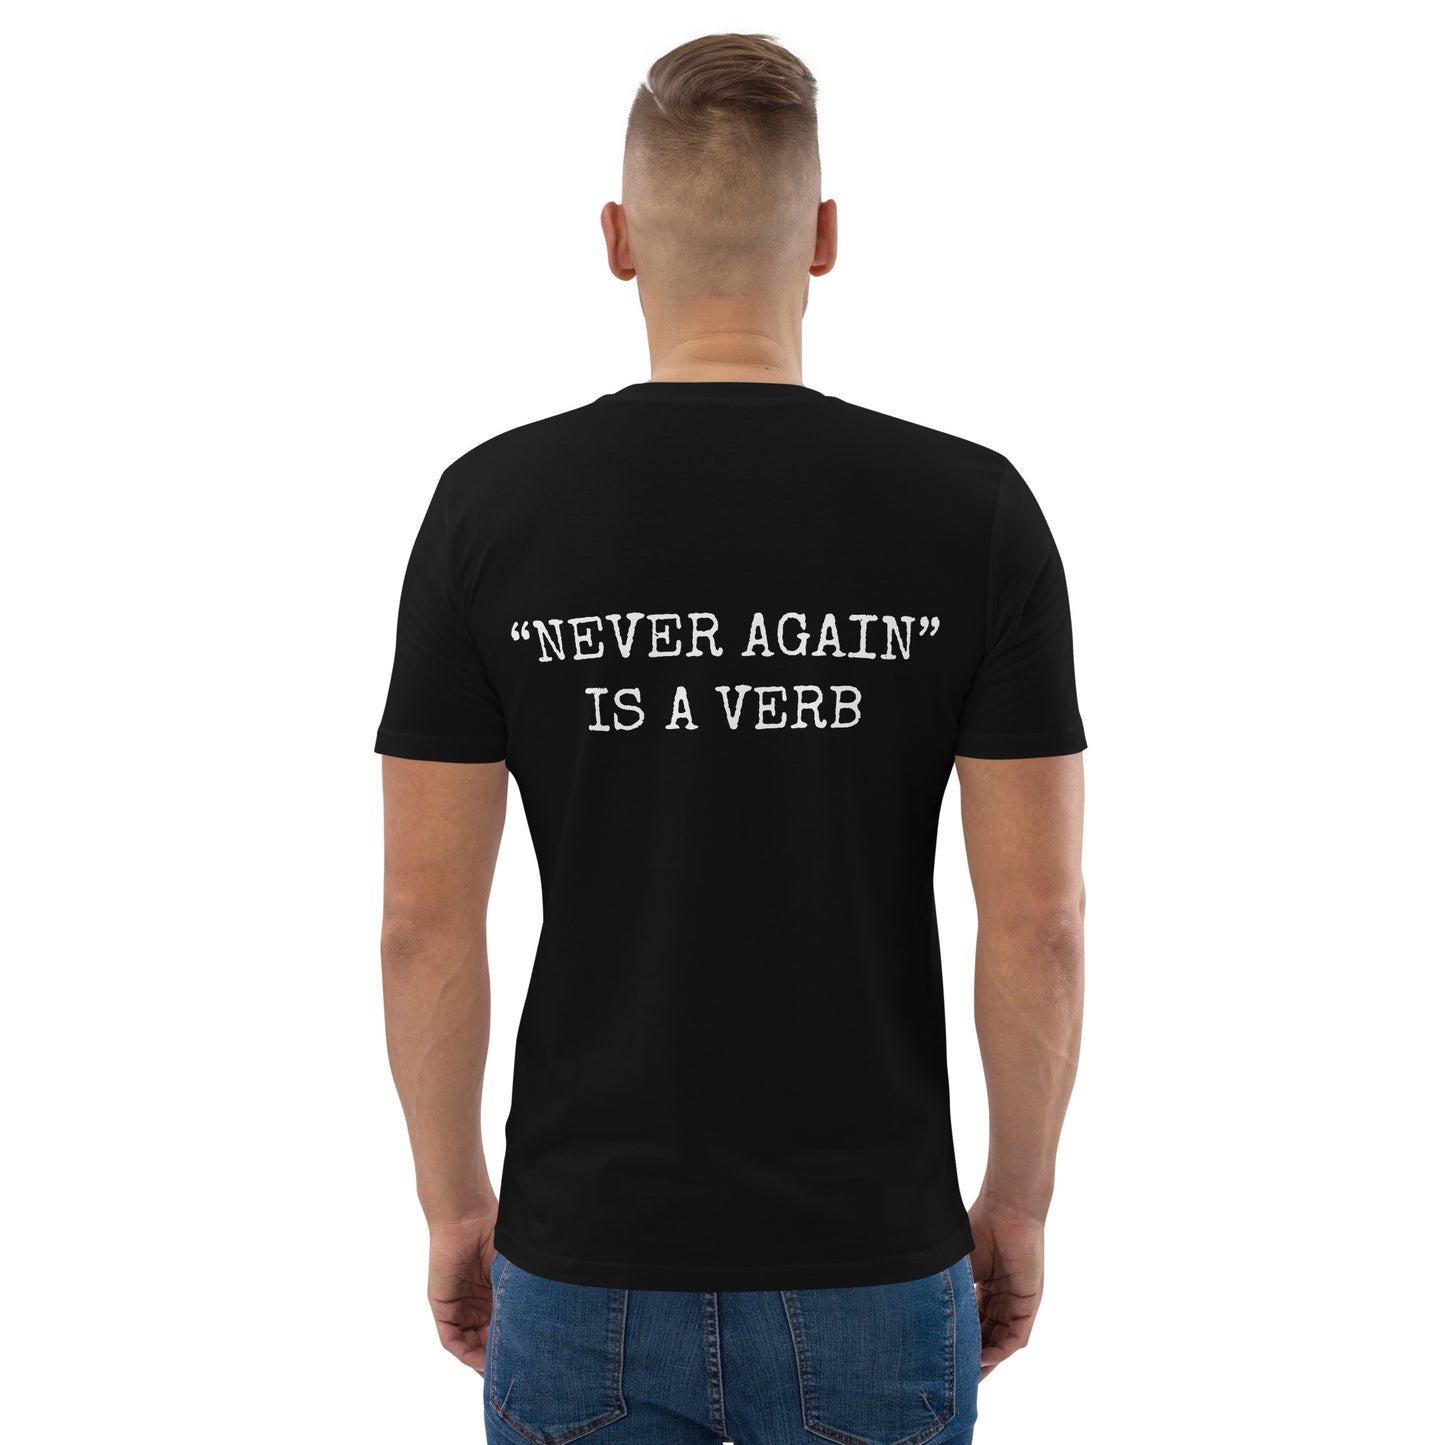 T-shirt - "Never Again" Is a Verb